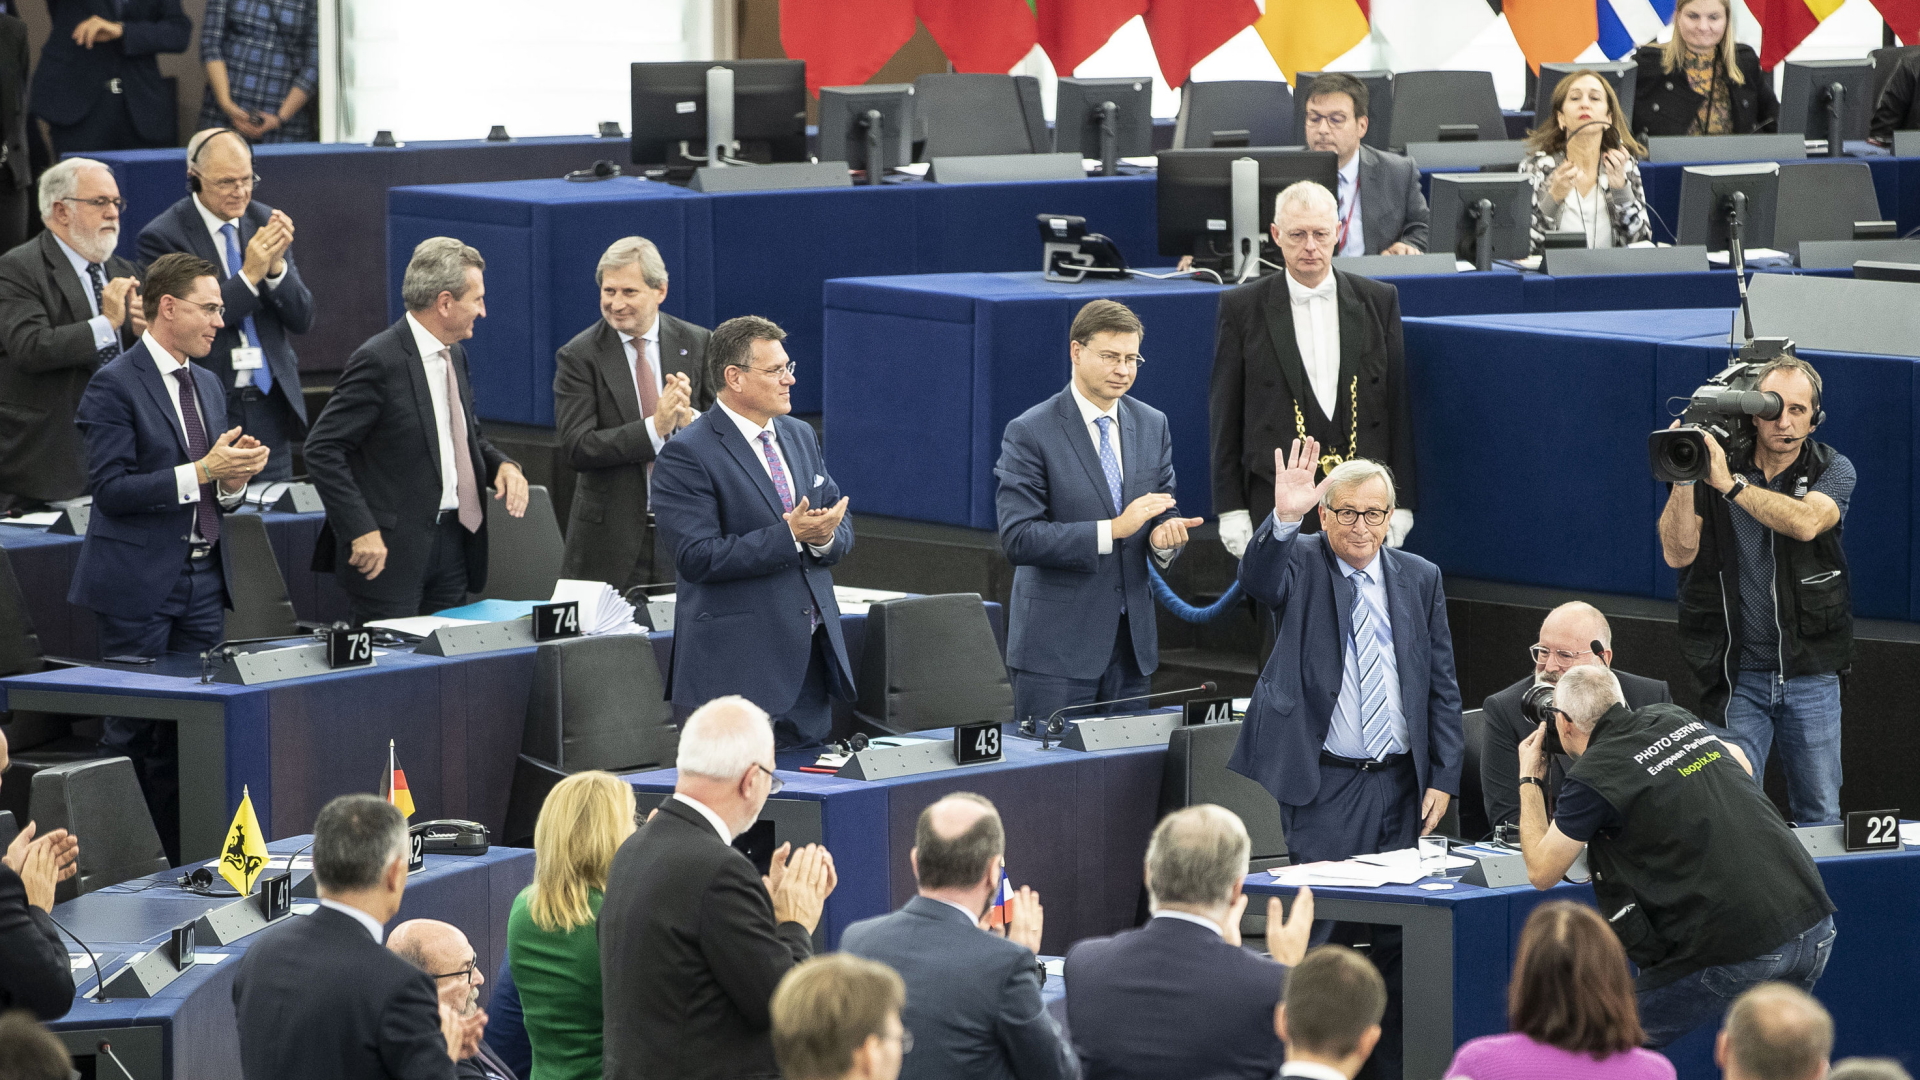 Beifall für den scheidenden Kommissionspräsidenten Jean-Claude Juncker nach seiner Abschiedsrede im EU-Parlament in Straßburg. | AP